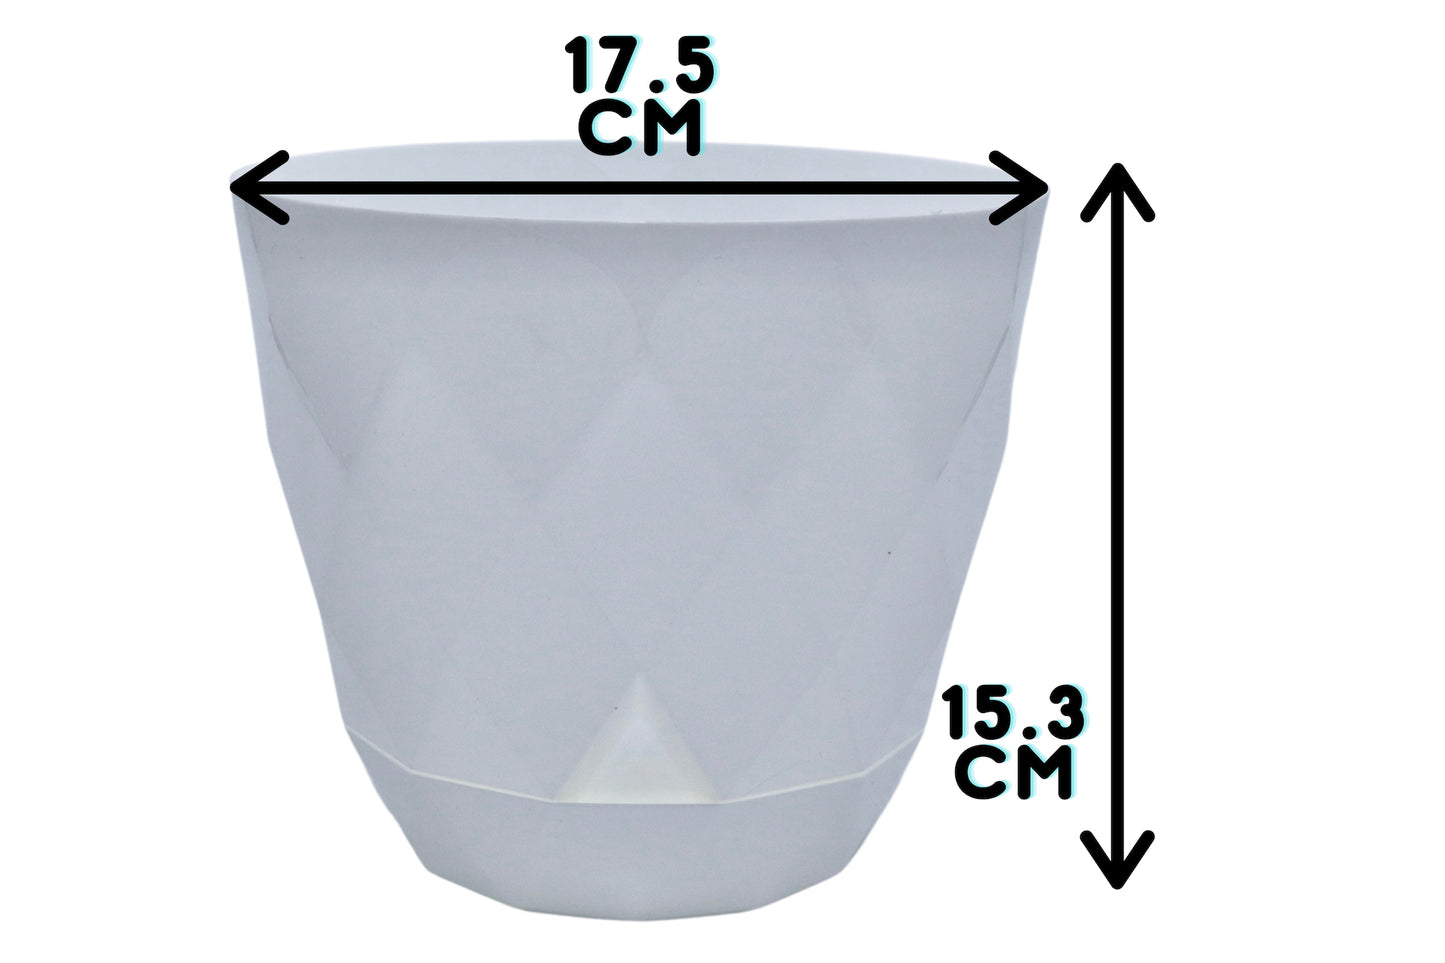 17.5cm white plant pot measurements